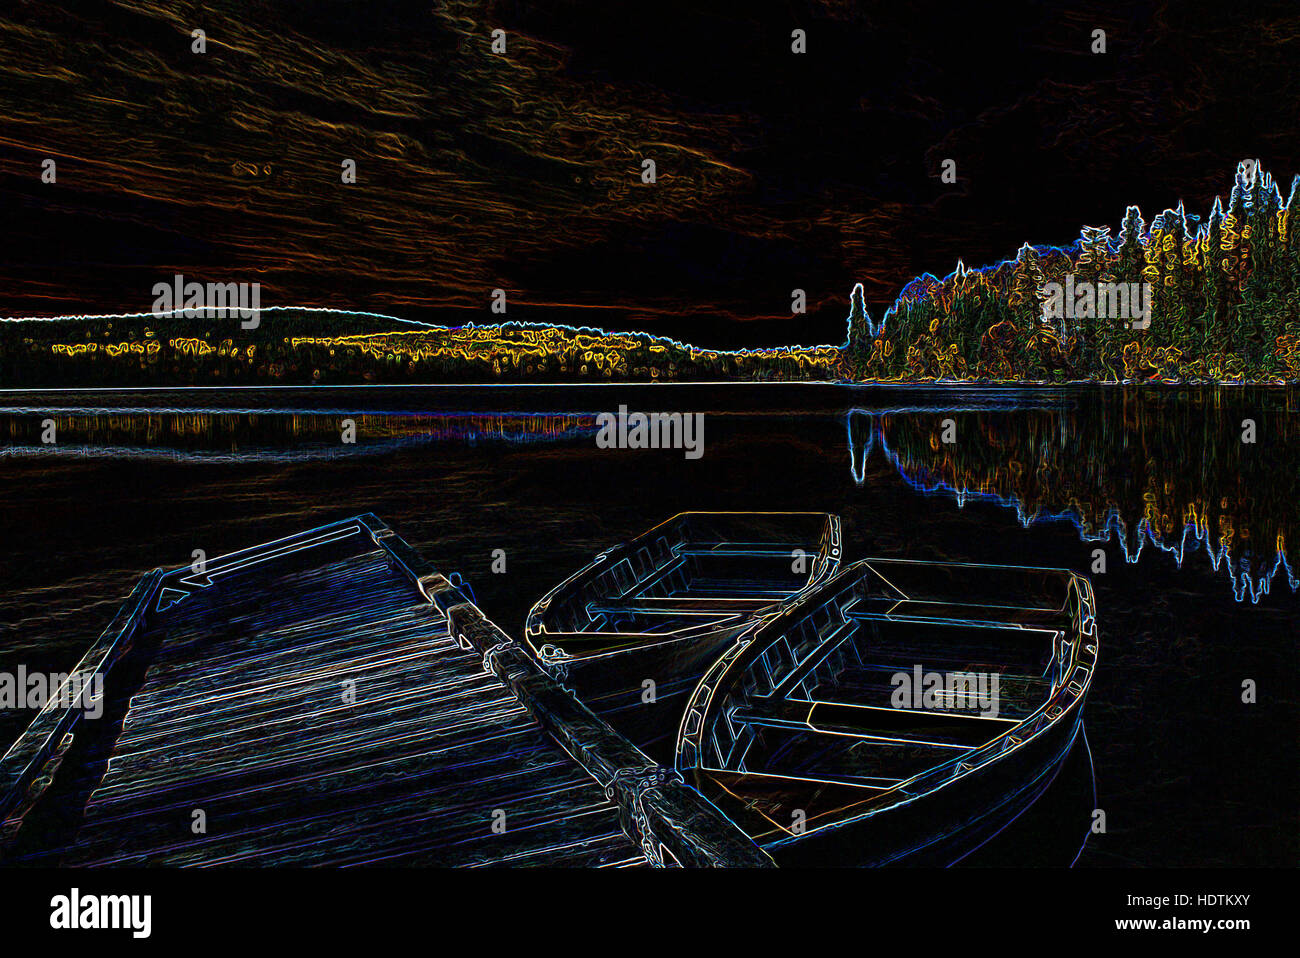 Botes de remos atado a atracar en el lago - imágenes manipuladas digitalmente con Bordes resplandecientes, Abstracto / barcos barco sobre un fondo negro Foto de stock